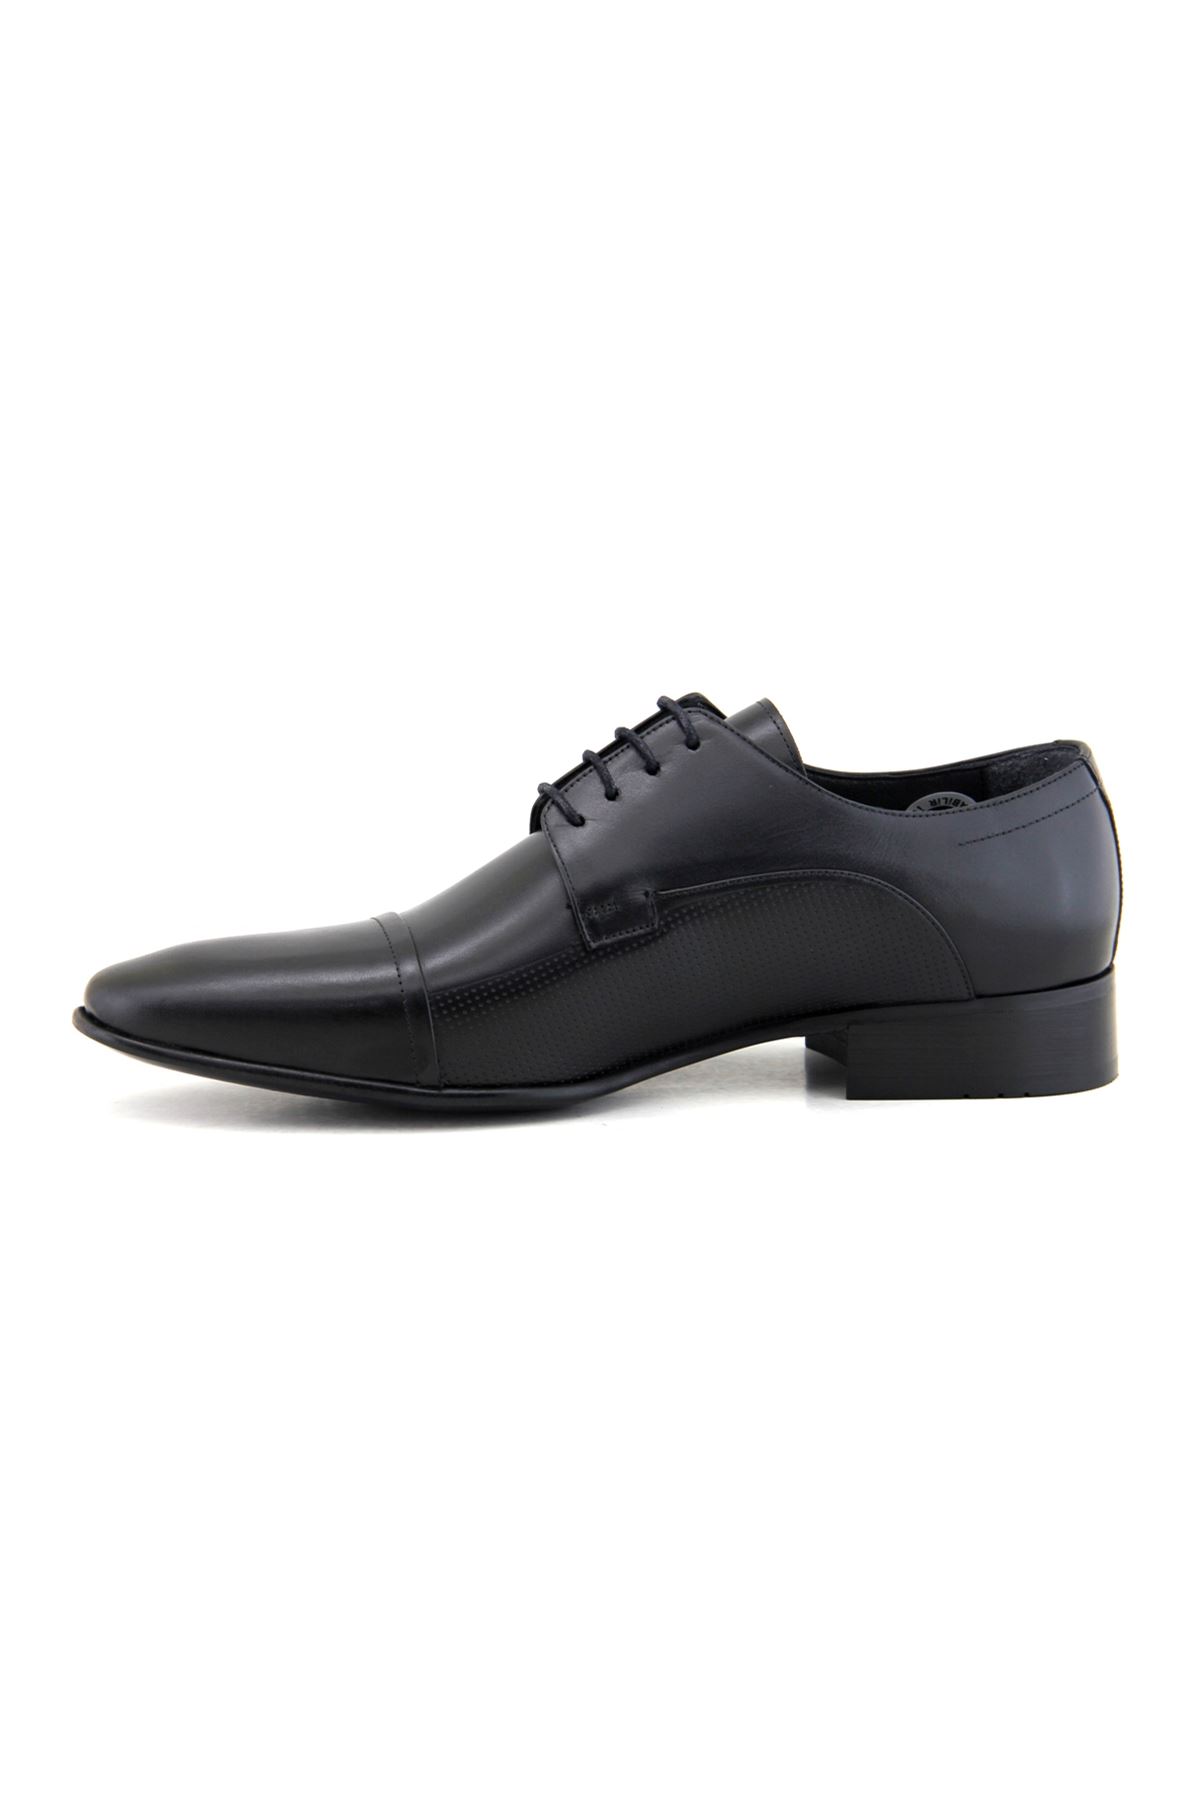 Fosco 2239 Hakiki Deri Klasik Erkek Ayakkabı - Siyah